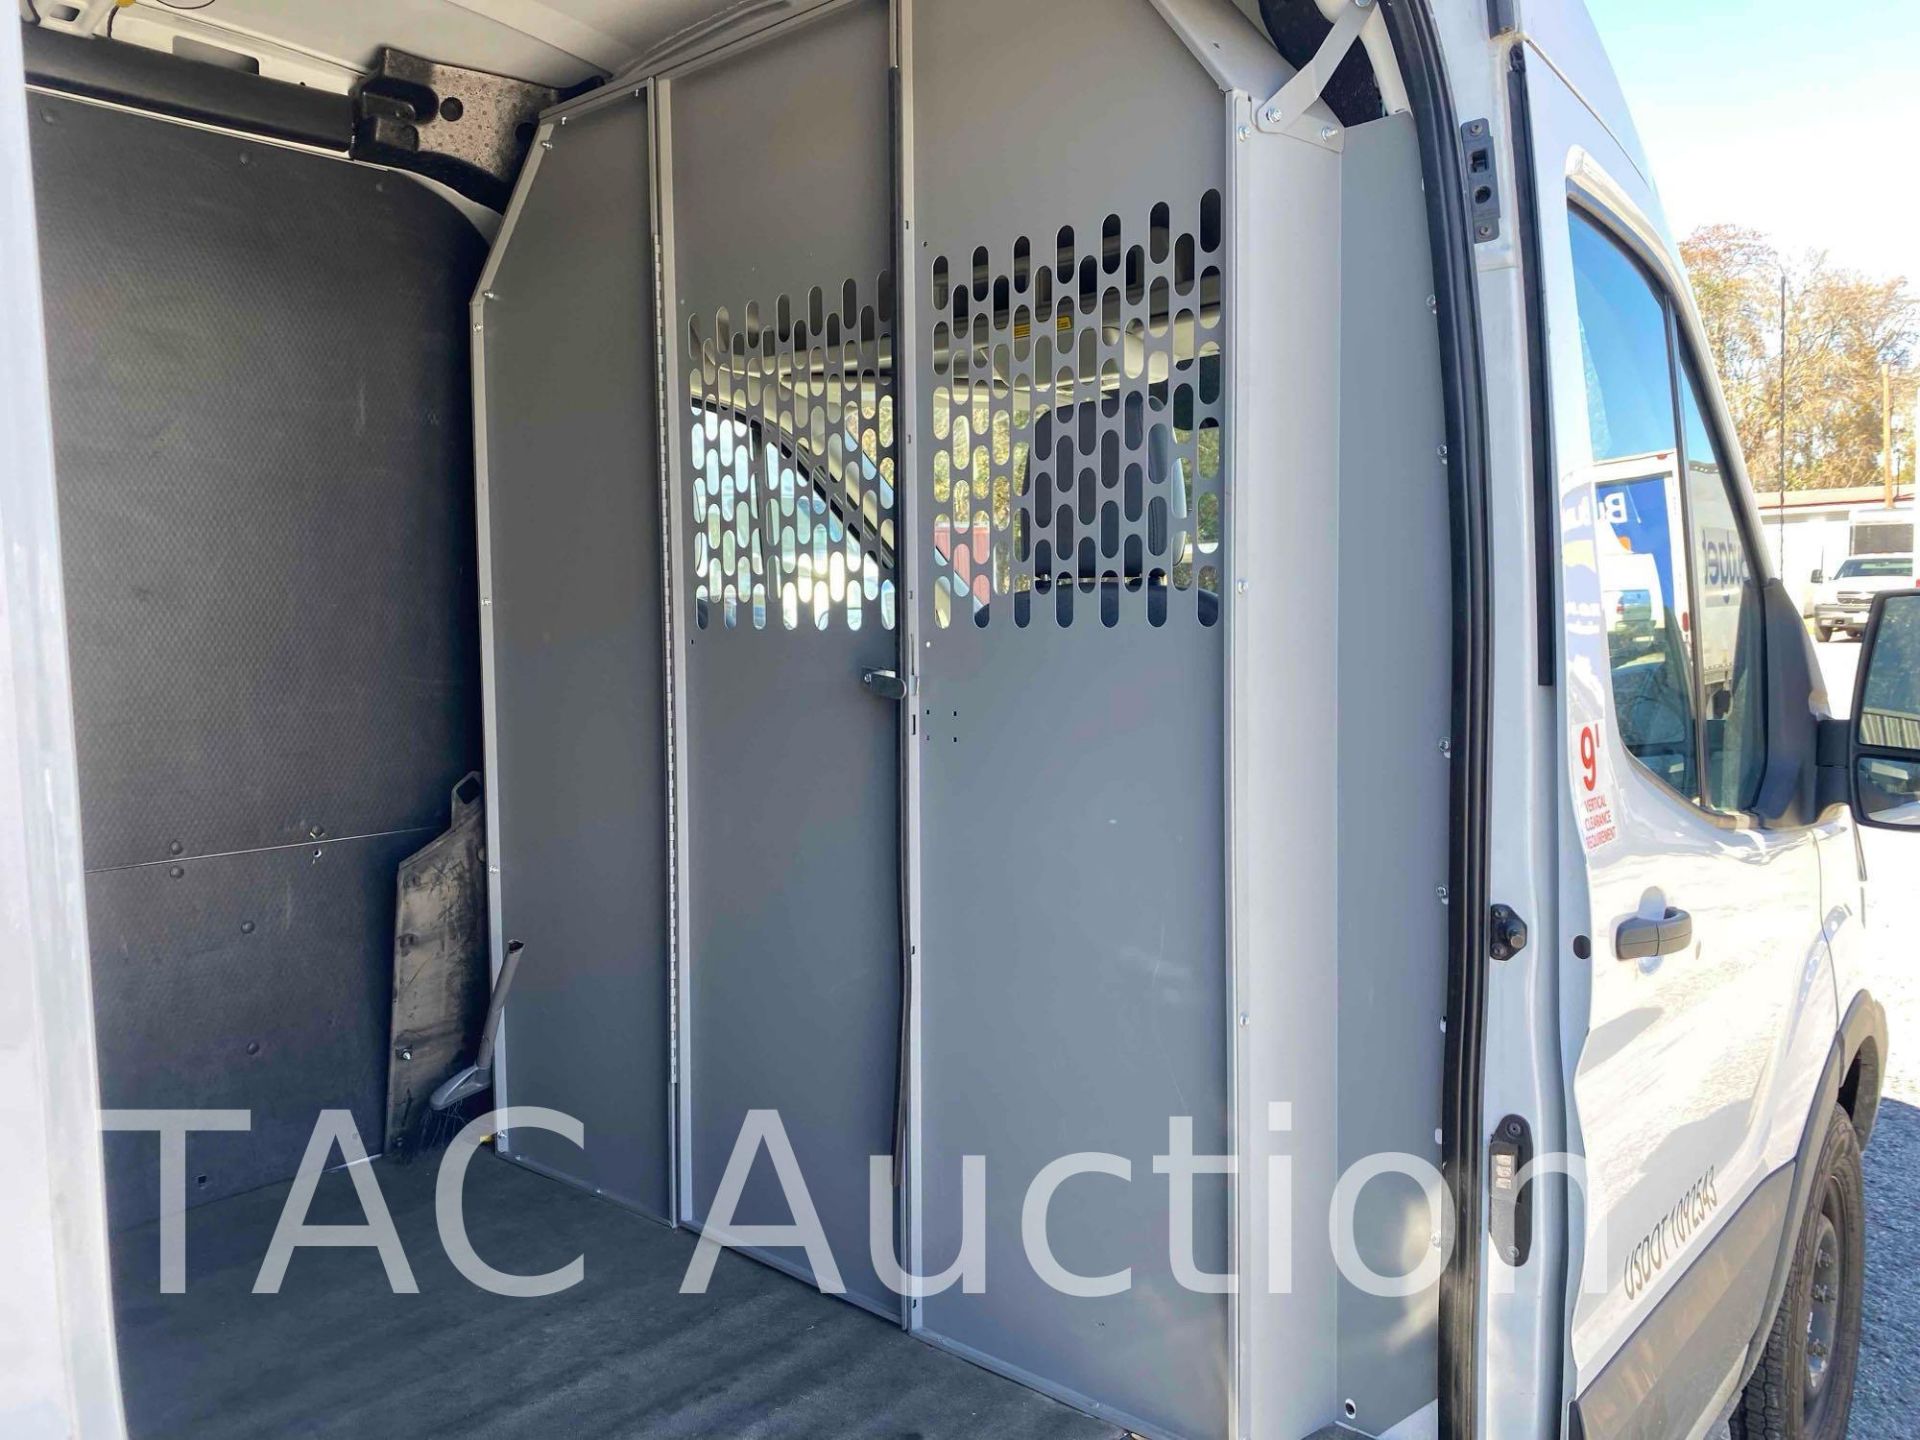 2019 Ford Transit 150 Cargo Van - Image 22 of 44